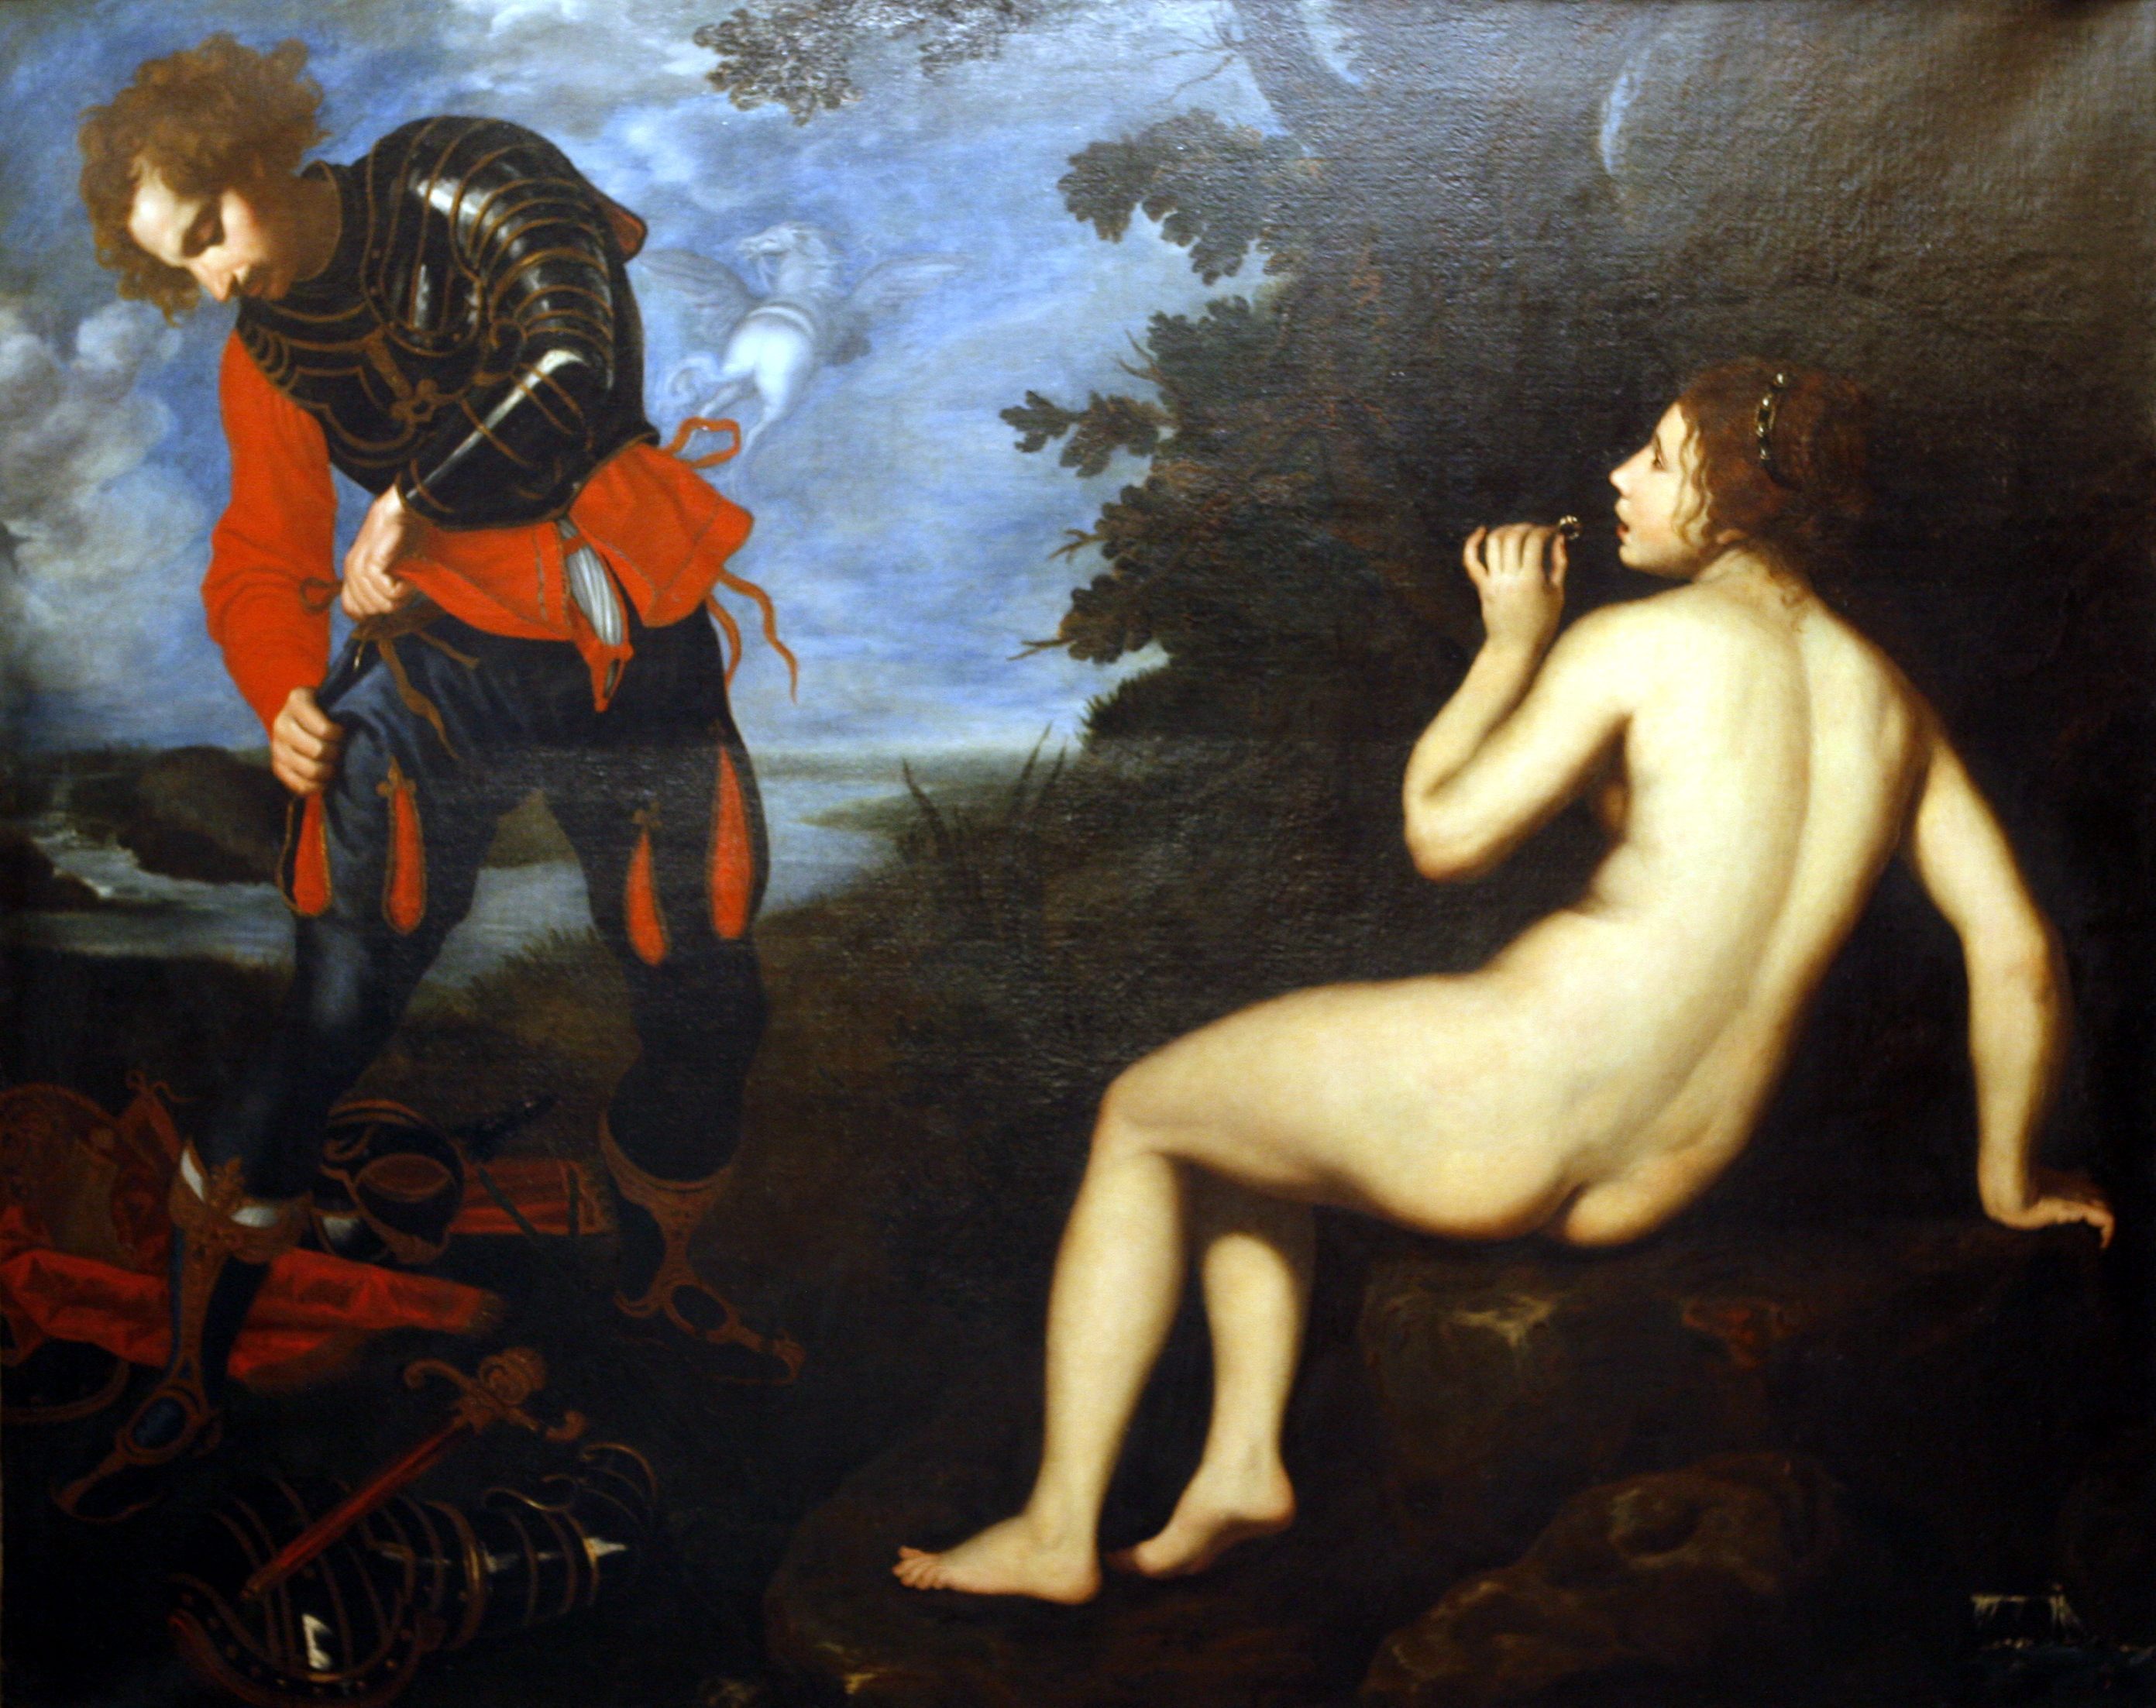 Roger et Angélique by Giovanni Biliverti - Ca. 1630 Musée des Beaux-Arts de Dijon